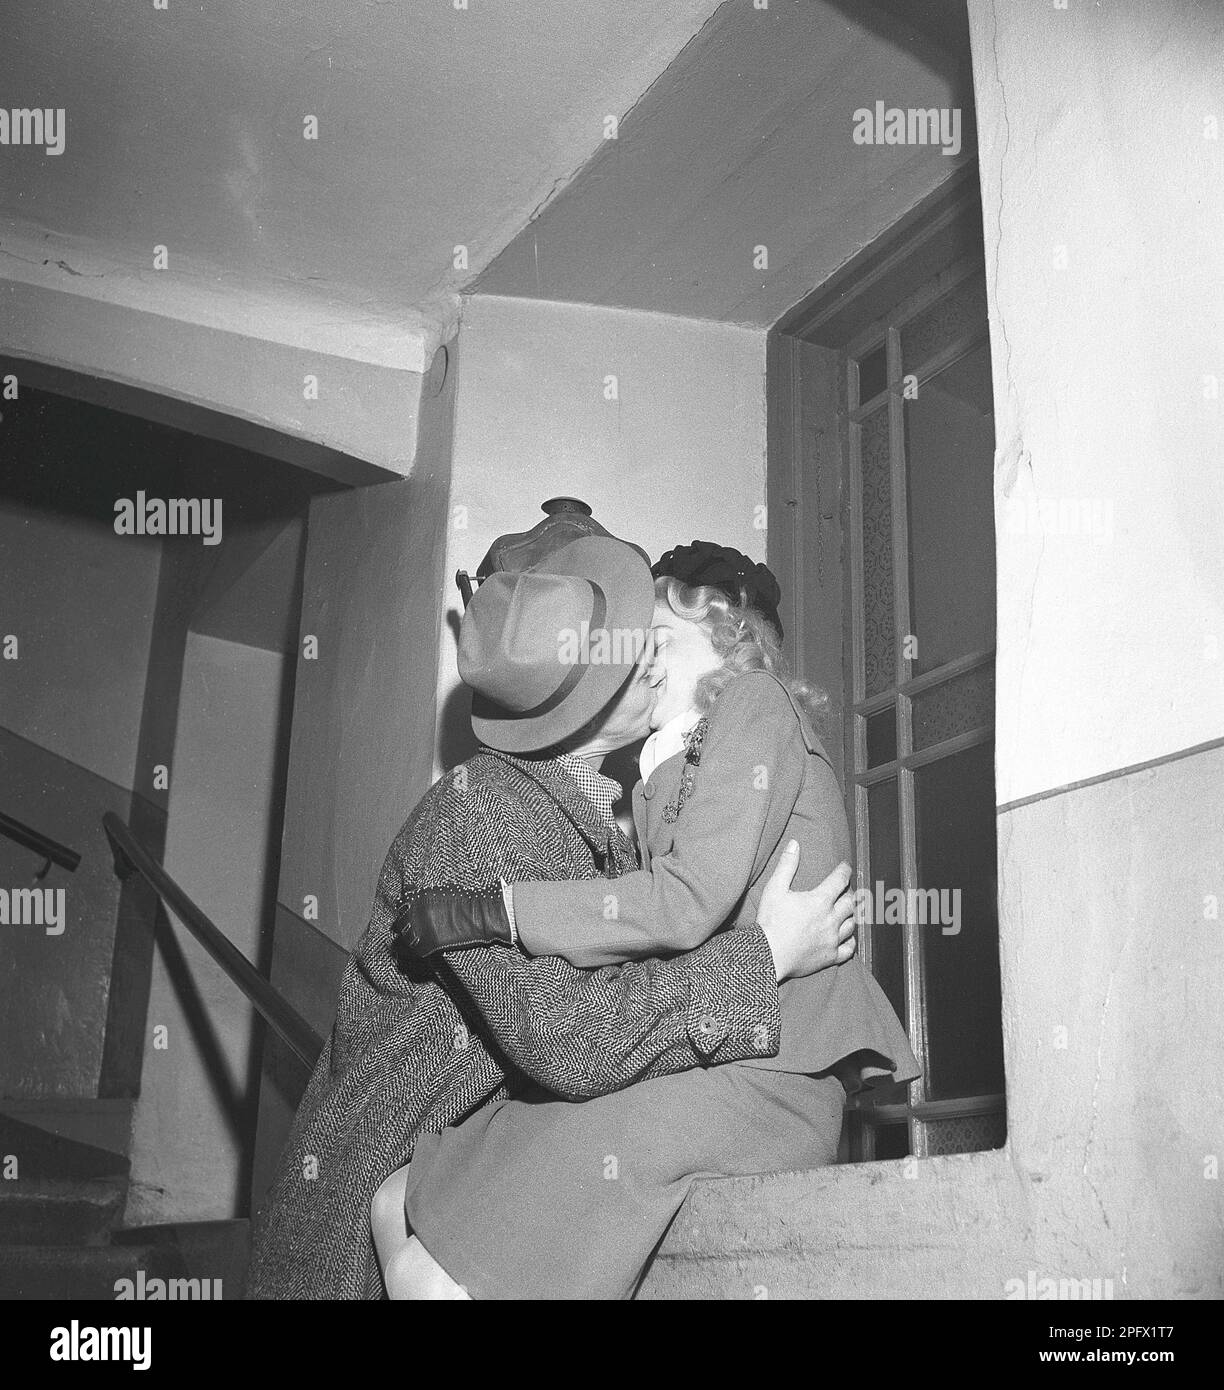 Küssen im 1940er. Jahrhundert. Ein junges Paar sah Küsse und Umarmungen auf der Treppe eines Wohngebäudes. Vielleicht einen gute-Nacht-Kuss. Schweden 1946 Kristoffersson Ref Y7-1 Stockfoto